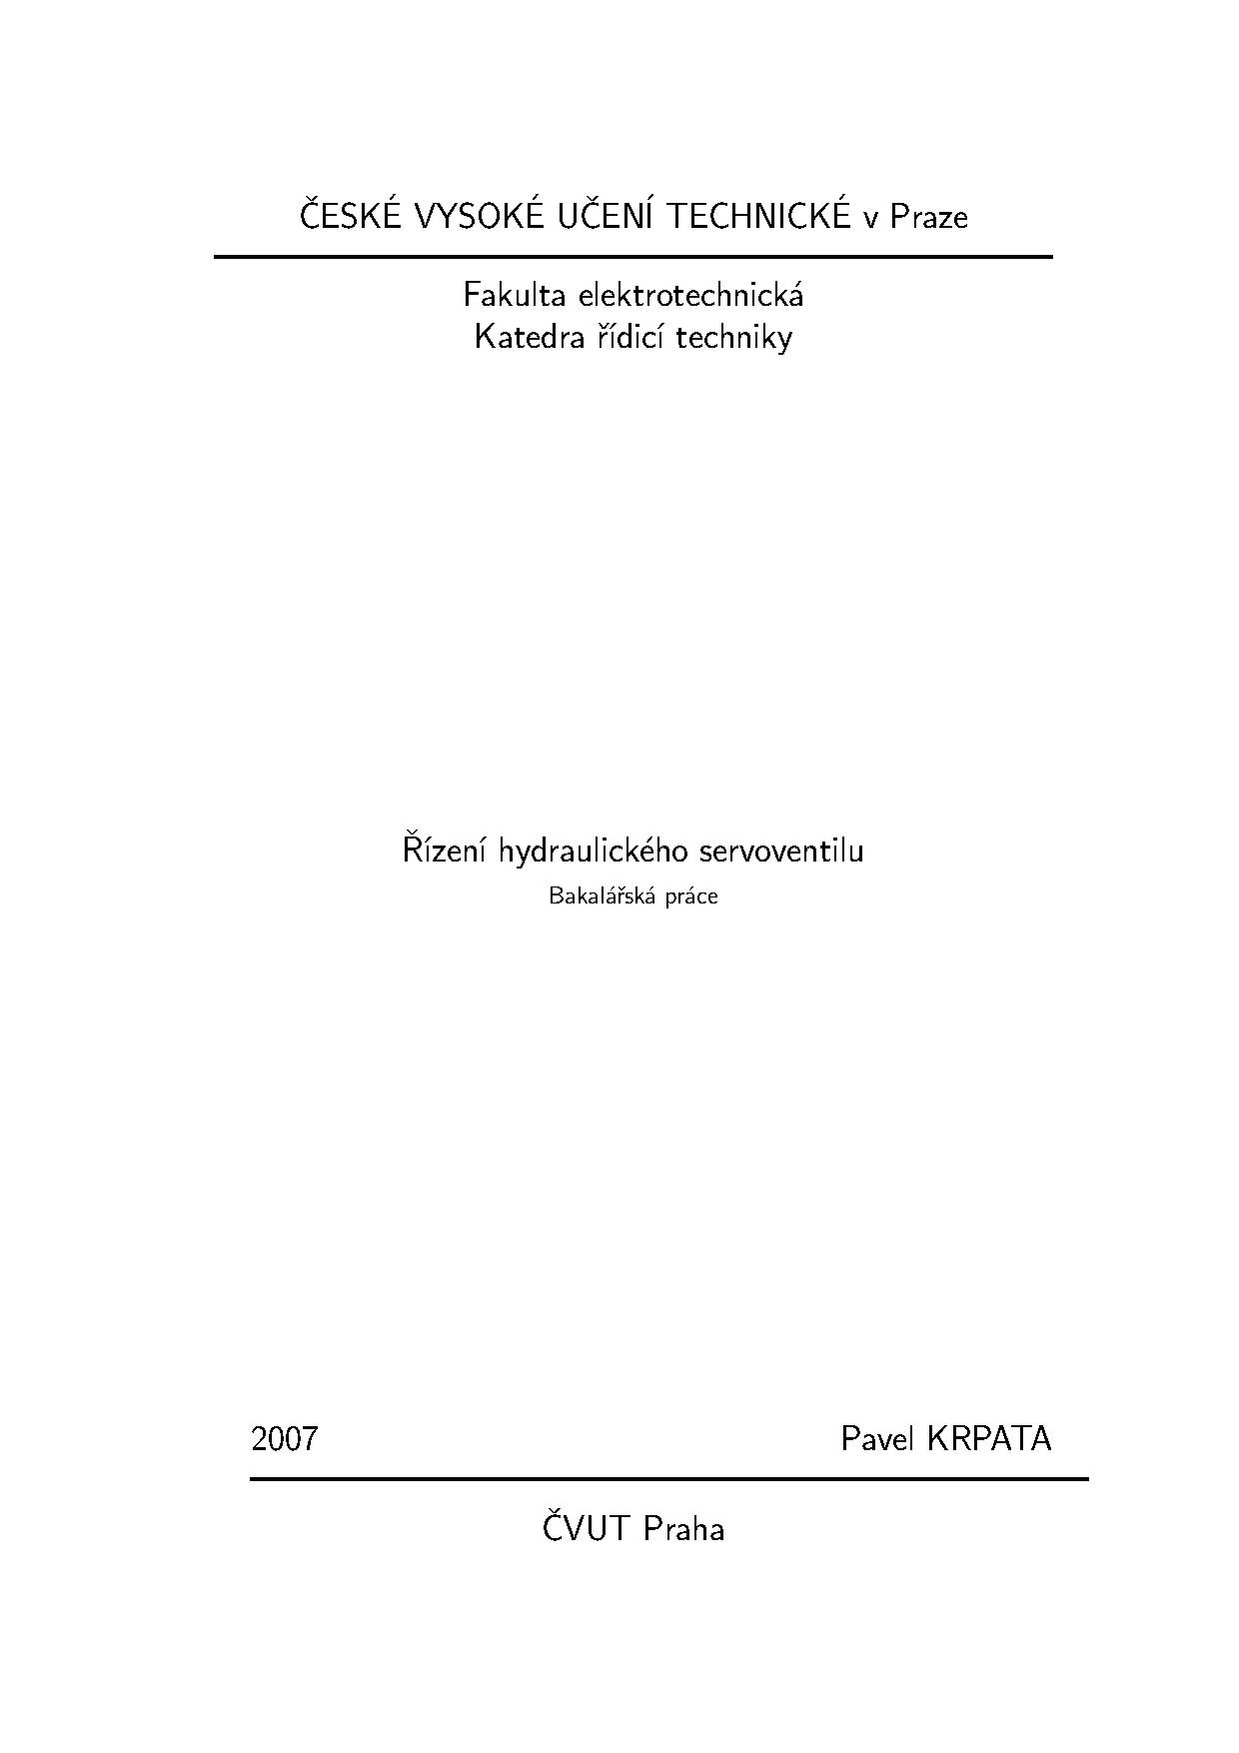 Bp 2007 krpata pavel.pdf